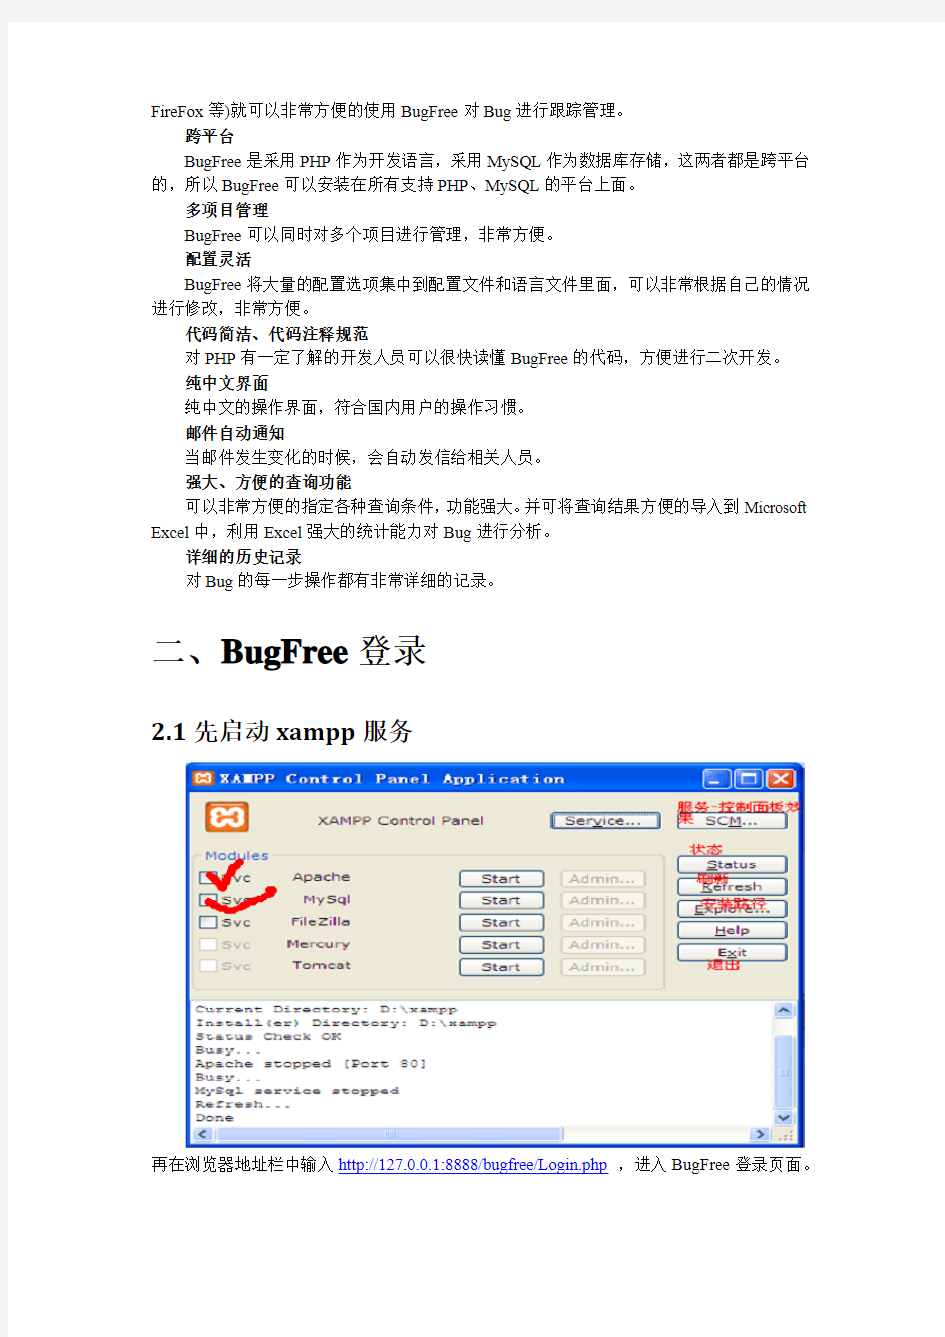 2.BugFree使用手册的整理2012-5-21